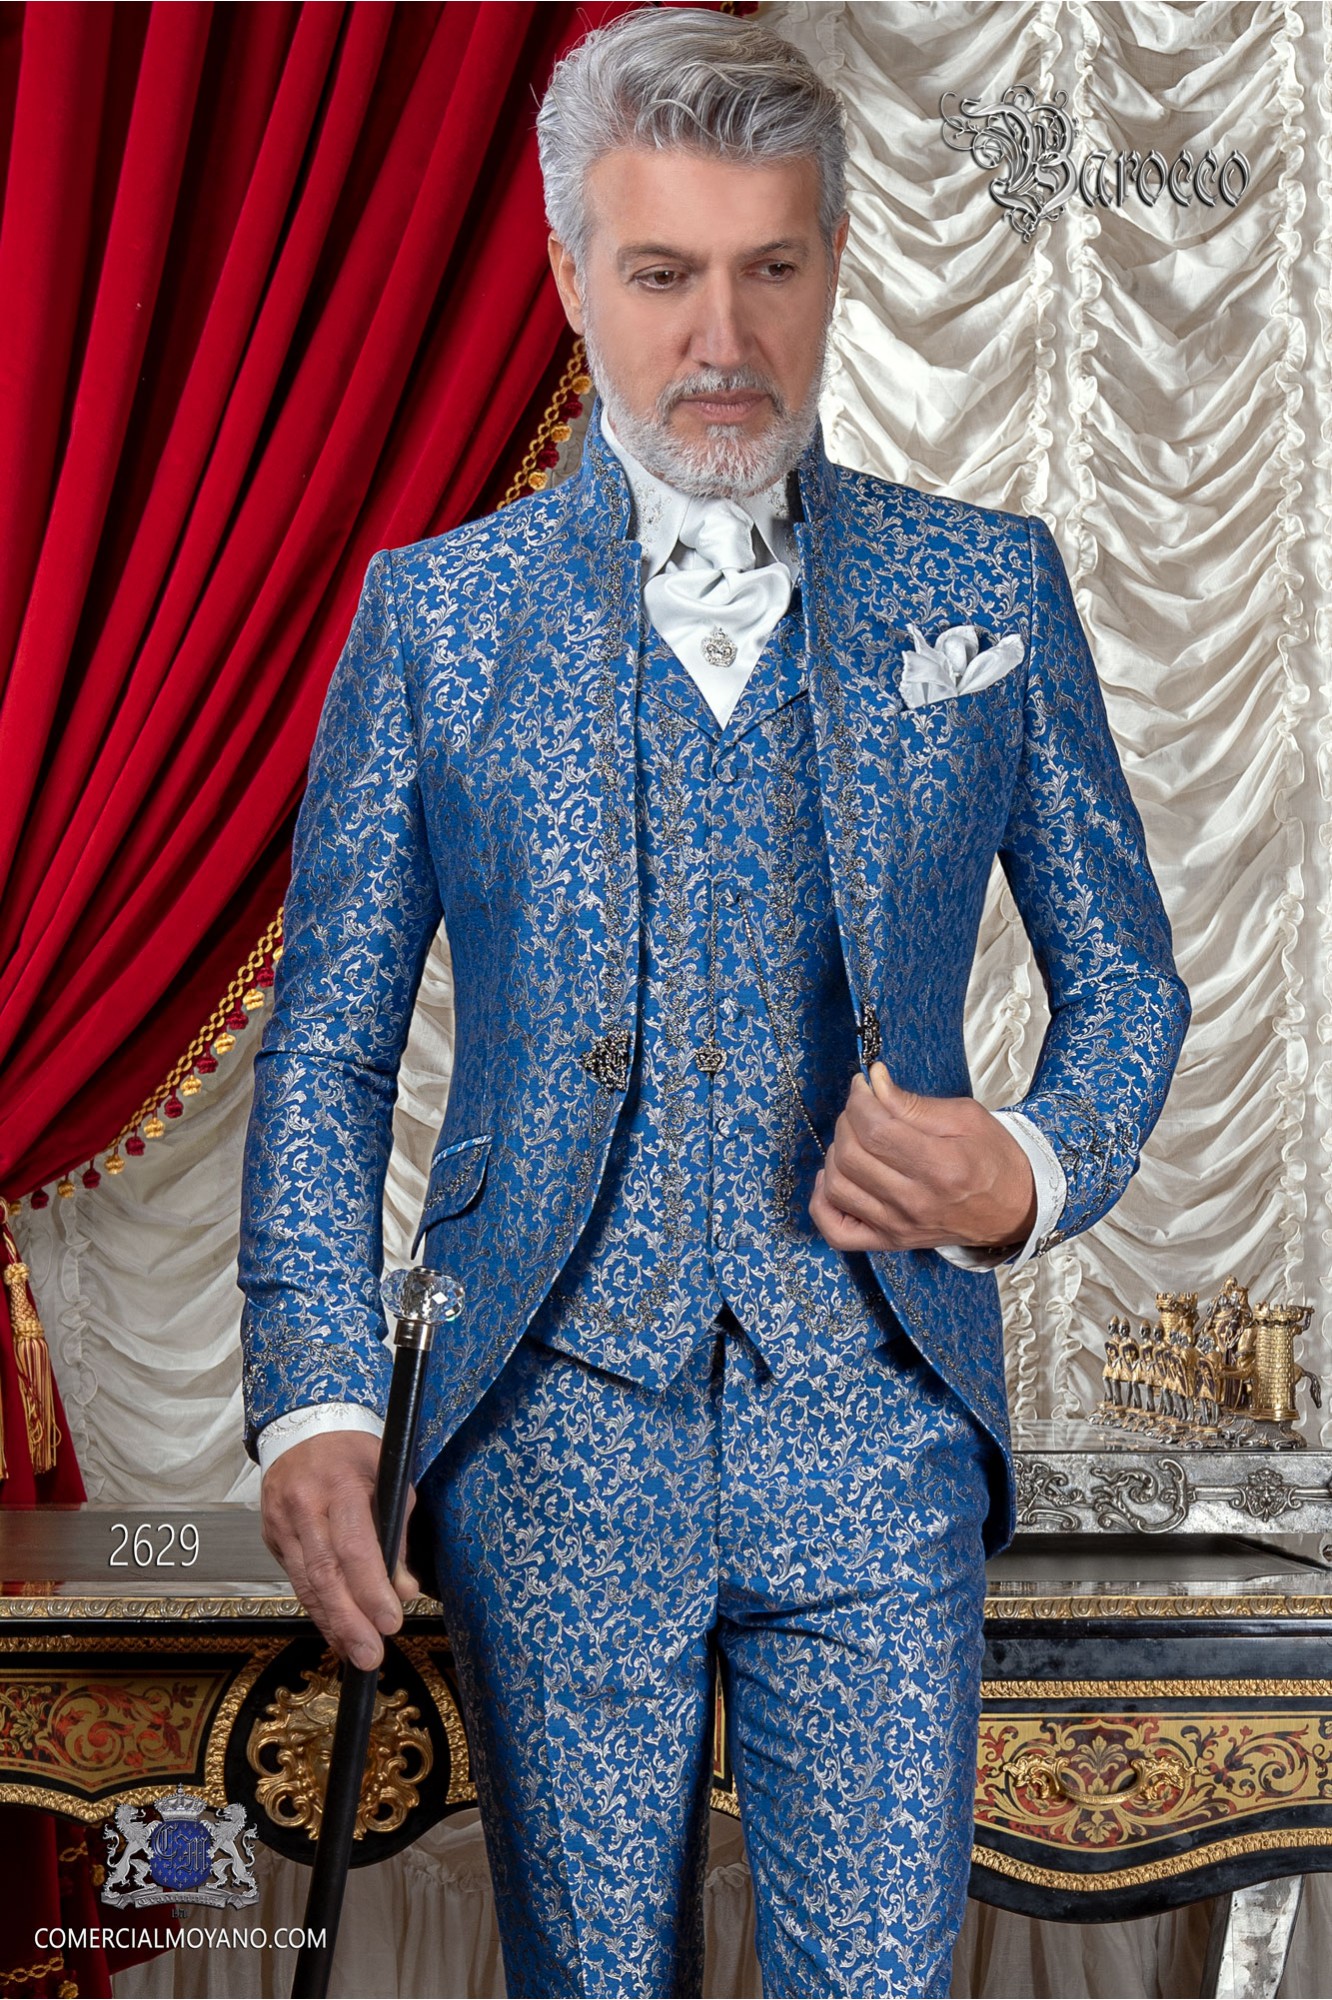 Traje de novio barroco, levita de época cuello mao en tejido jacquard azul y plata con bordados plateados modelo: 2629 Mario Moyano colección Barroco